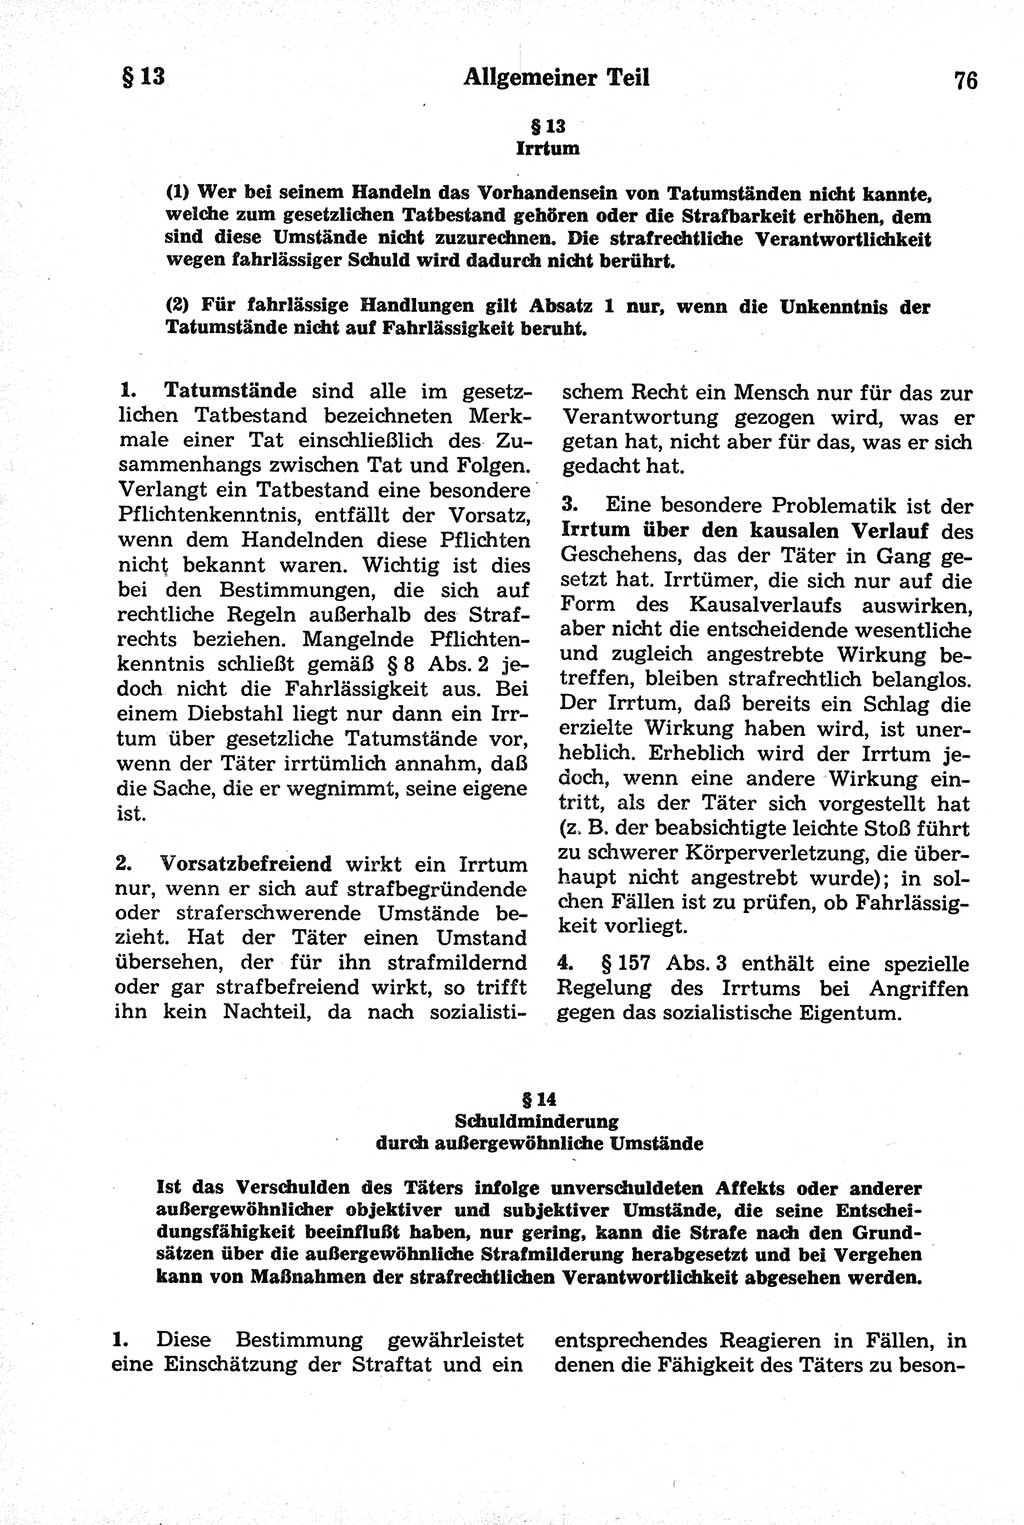 Strafrecht der Deutschen Demokratischen Republik (DDR), Kommentar zum Strafgesetzbuch (StGB) 1981, Seite 76 (Strafr. DDR Komm. StGB 1981, S. 76)